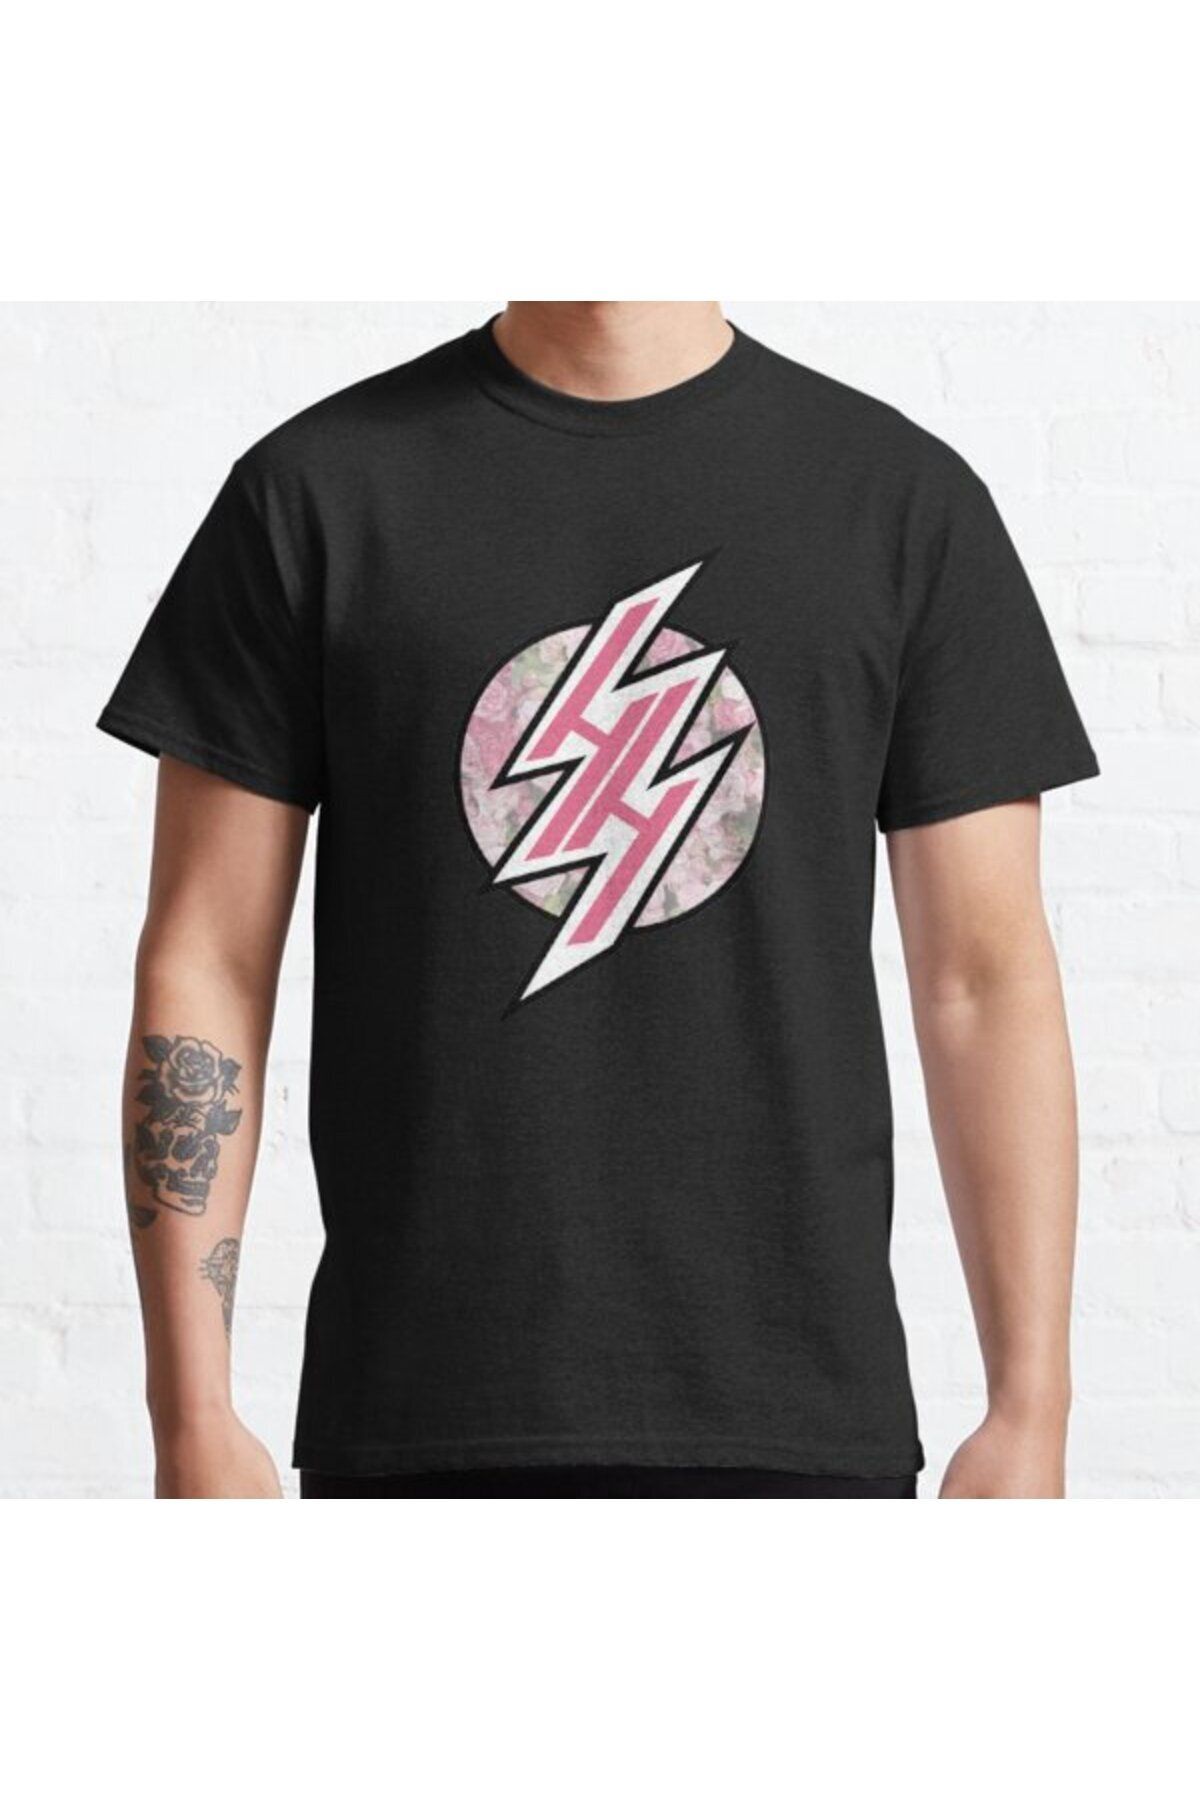 ZOKAWEAR Bol Kalıp Hentai Haven Pink Pastel Floral Tasarım Baskılı T-shirt